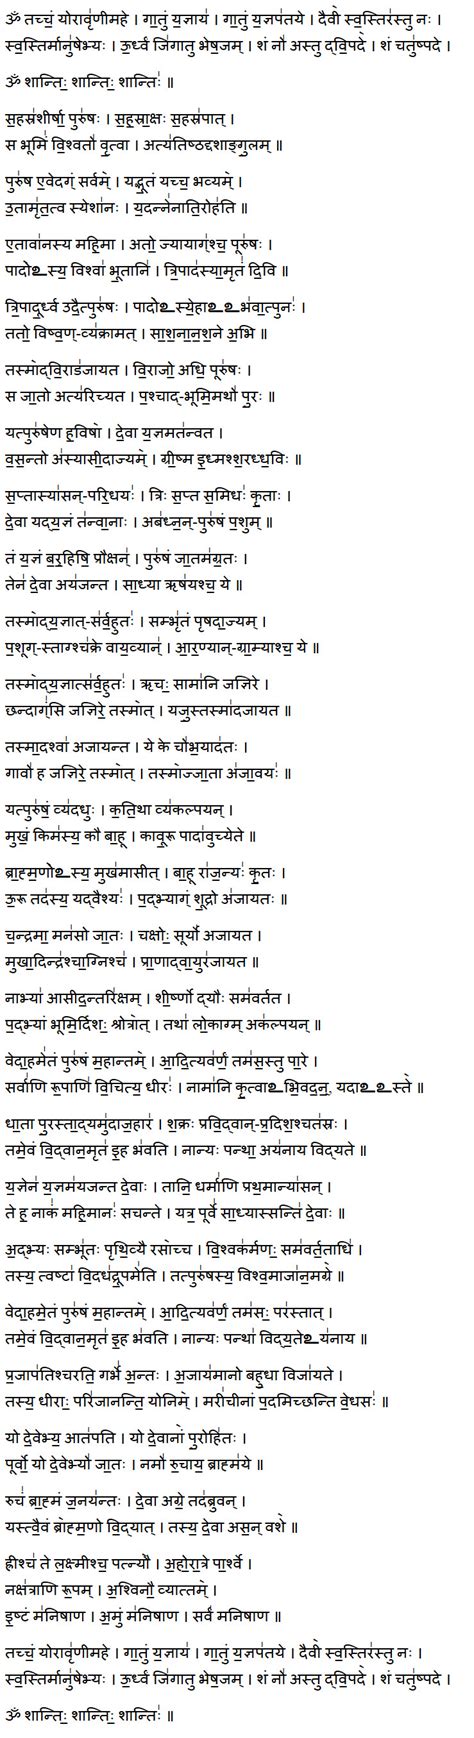 Purusha Suktam Lyrics In English Epub